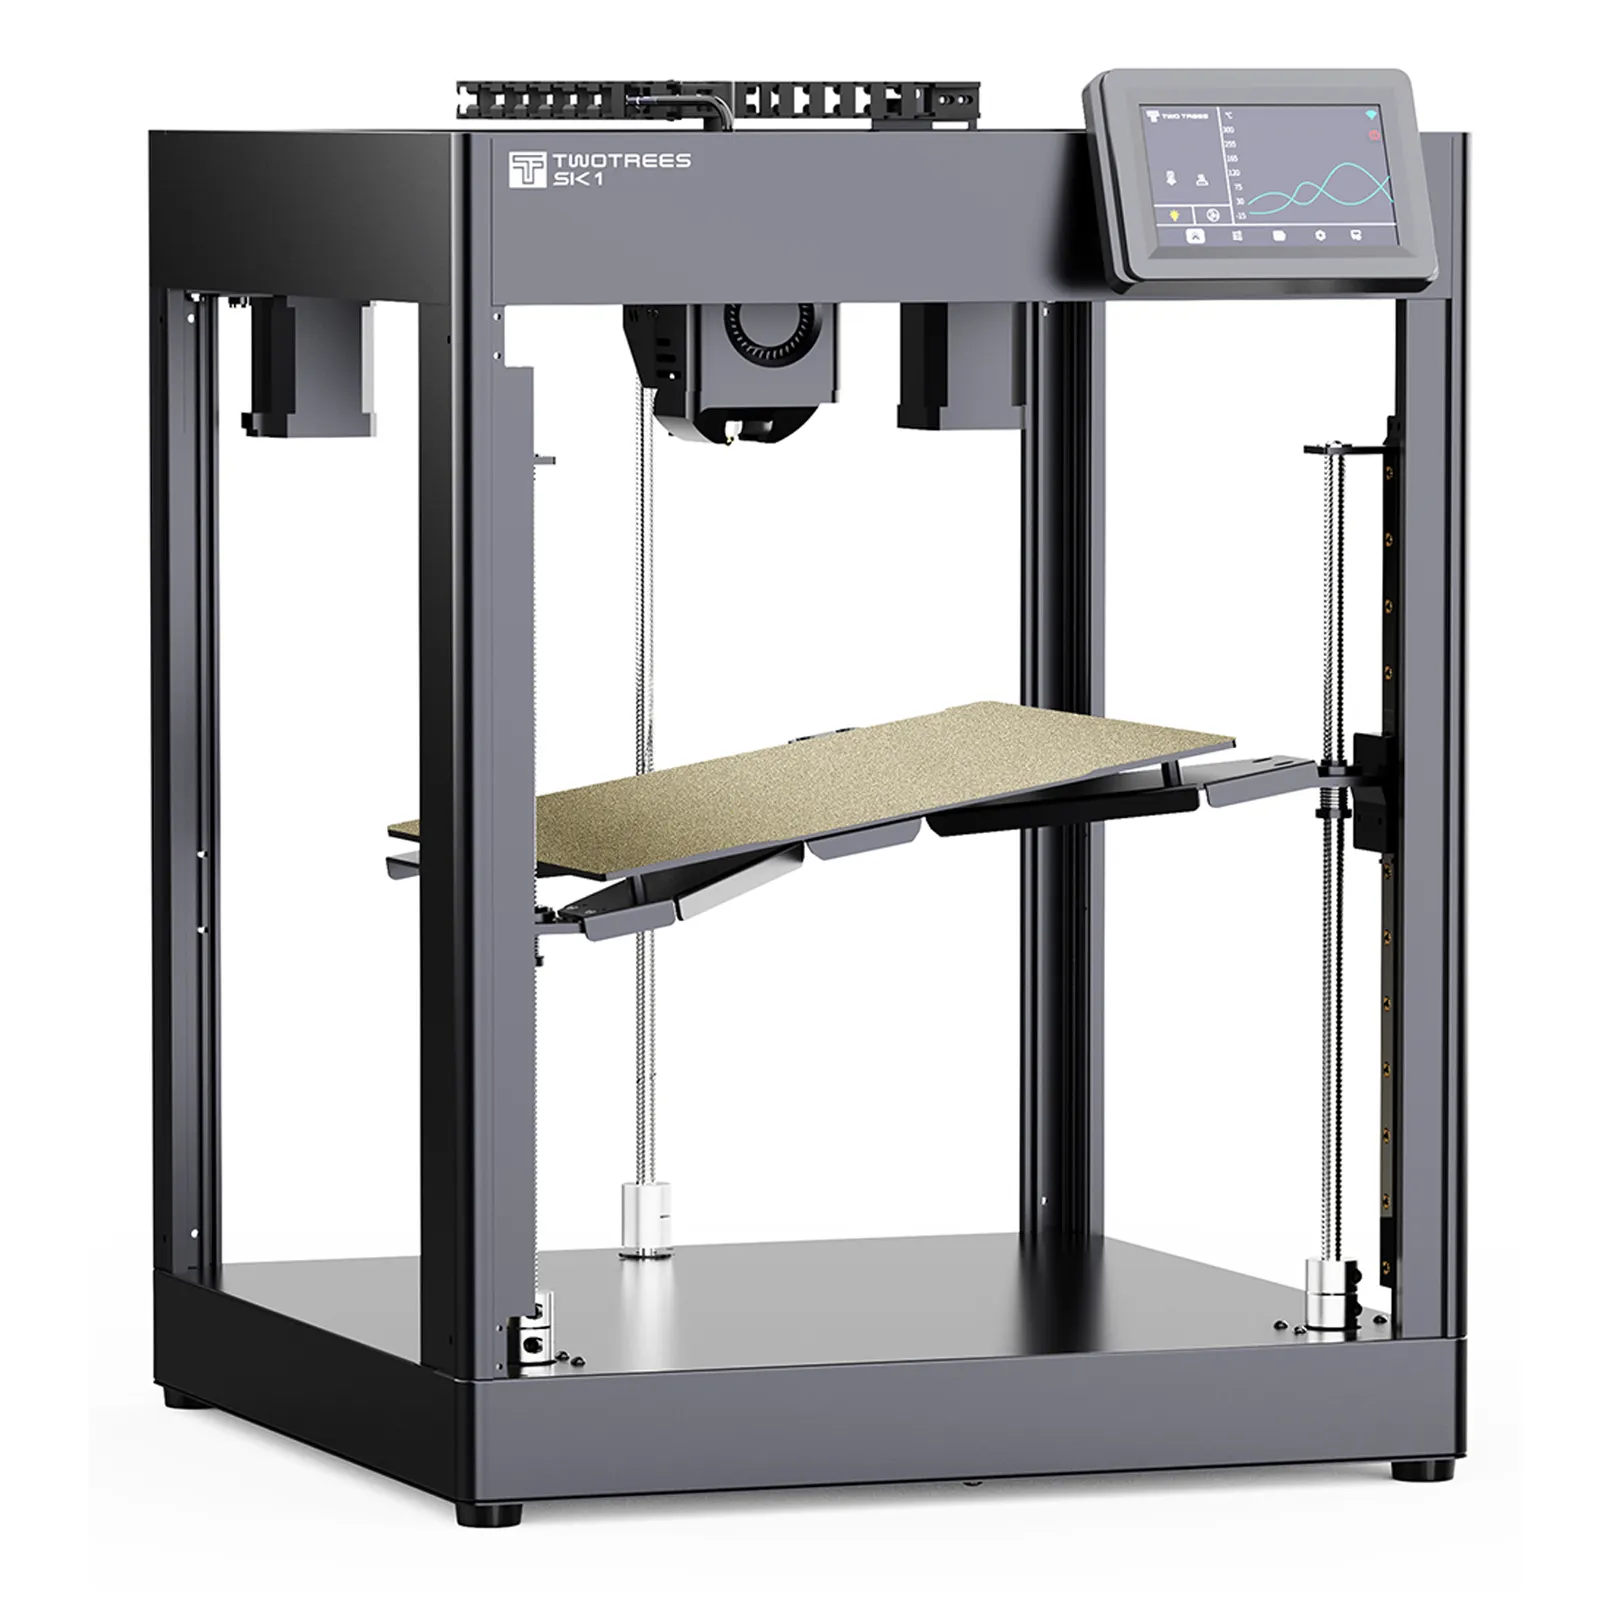 Impresoras 3D SK1 700 mm/s escritorio grande metal nivelación automática Industri Industrial 3D impresora máquina precio Metal 3D Impresora